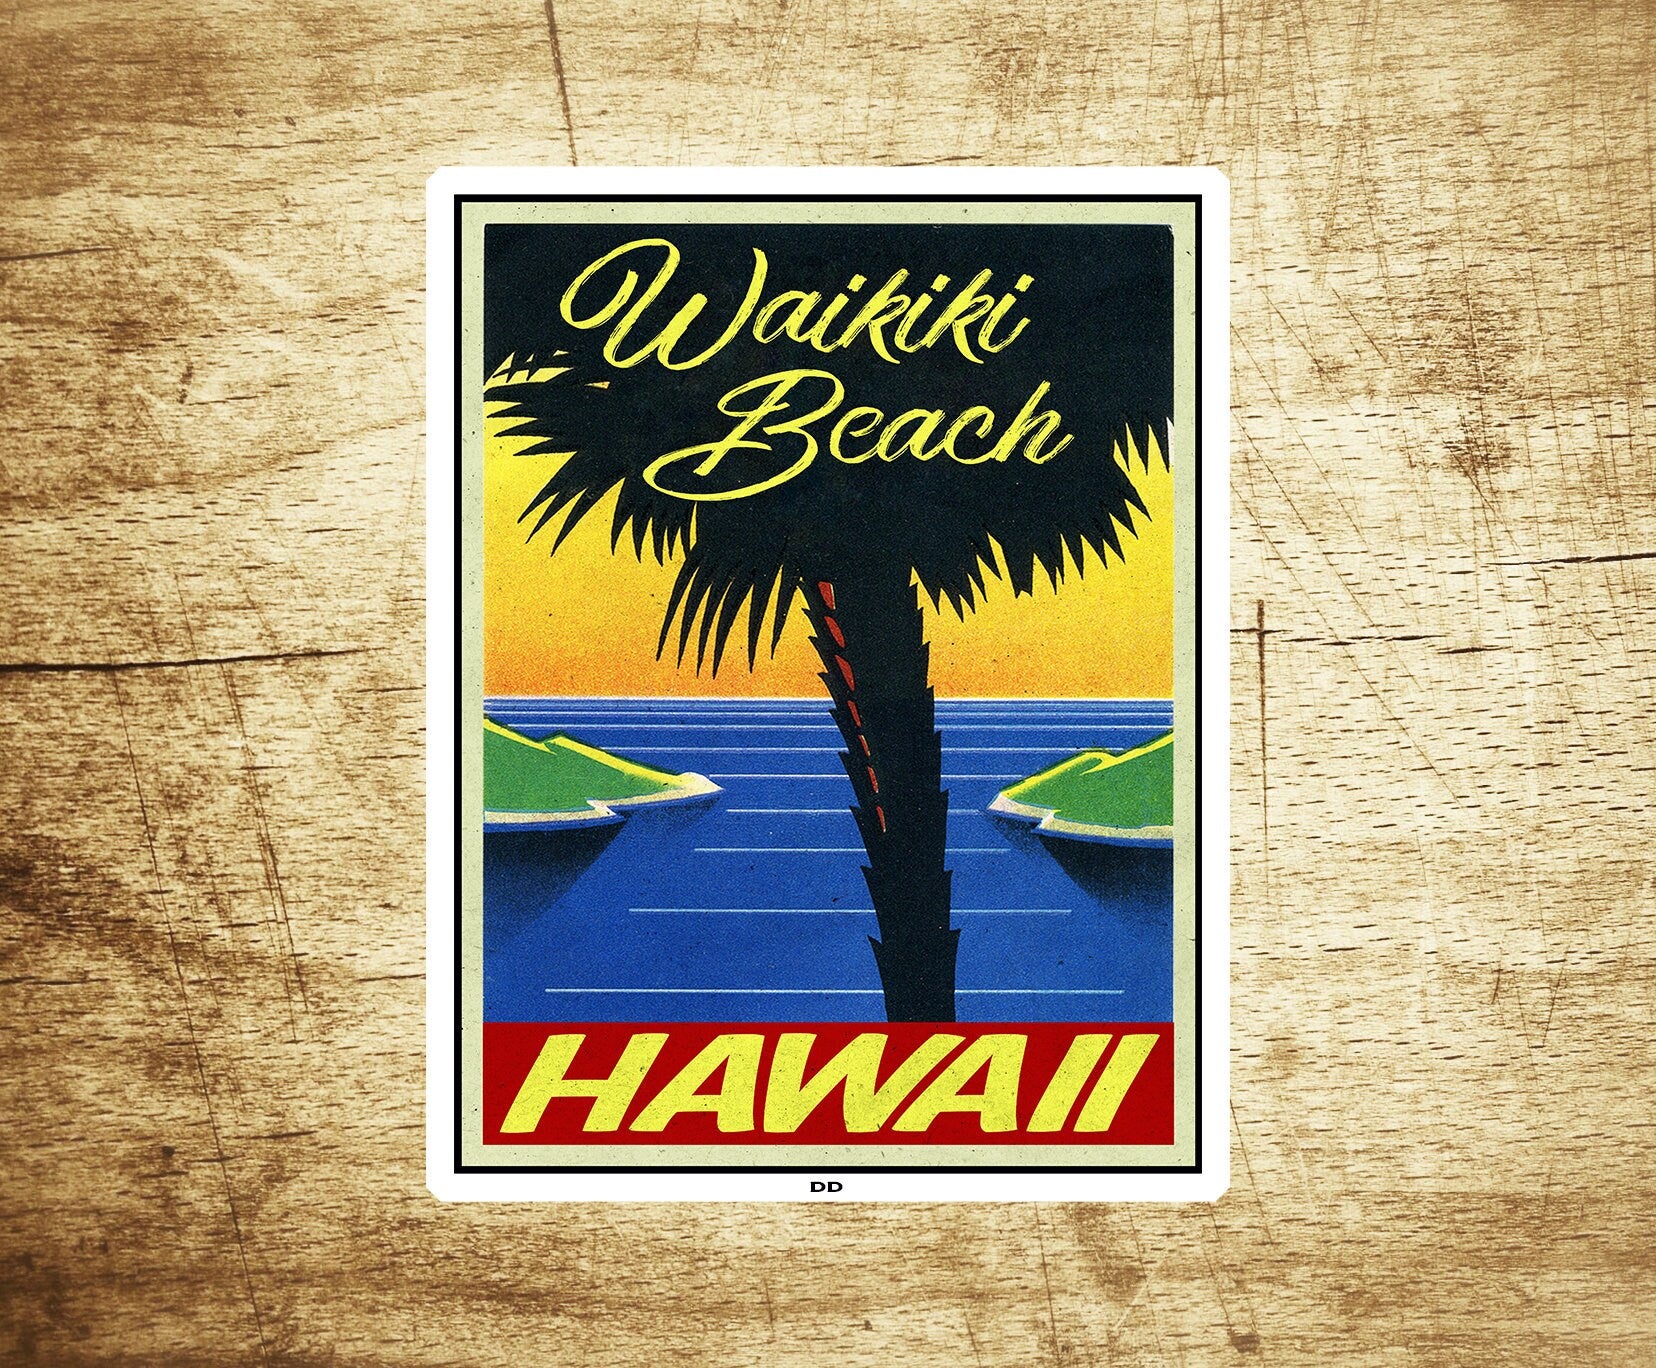 Surf Waikiki Beach Hawaii Decal Sticker 3.6" x 2.75" Oahu Surfing Vintage